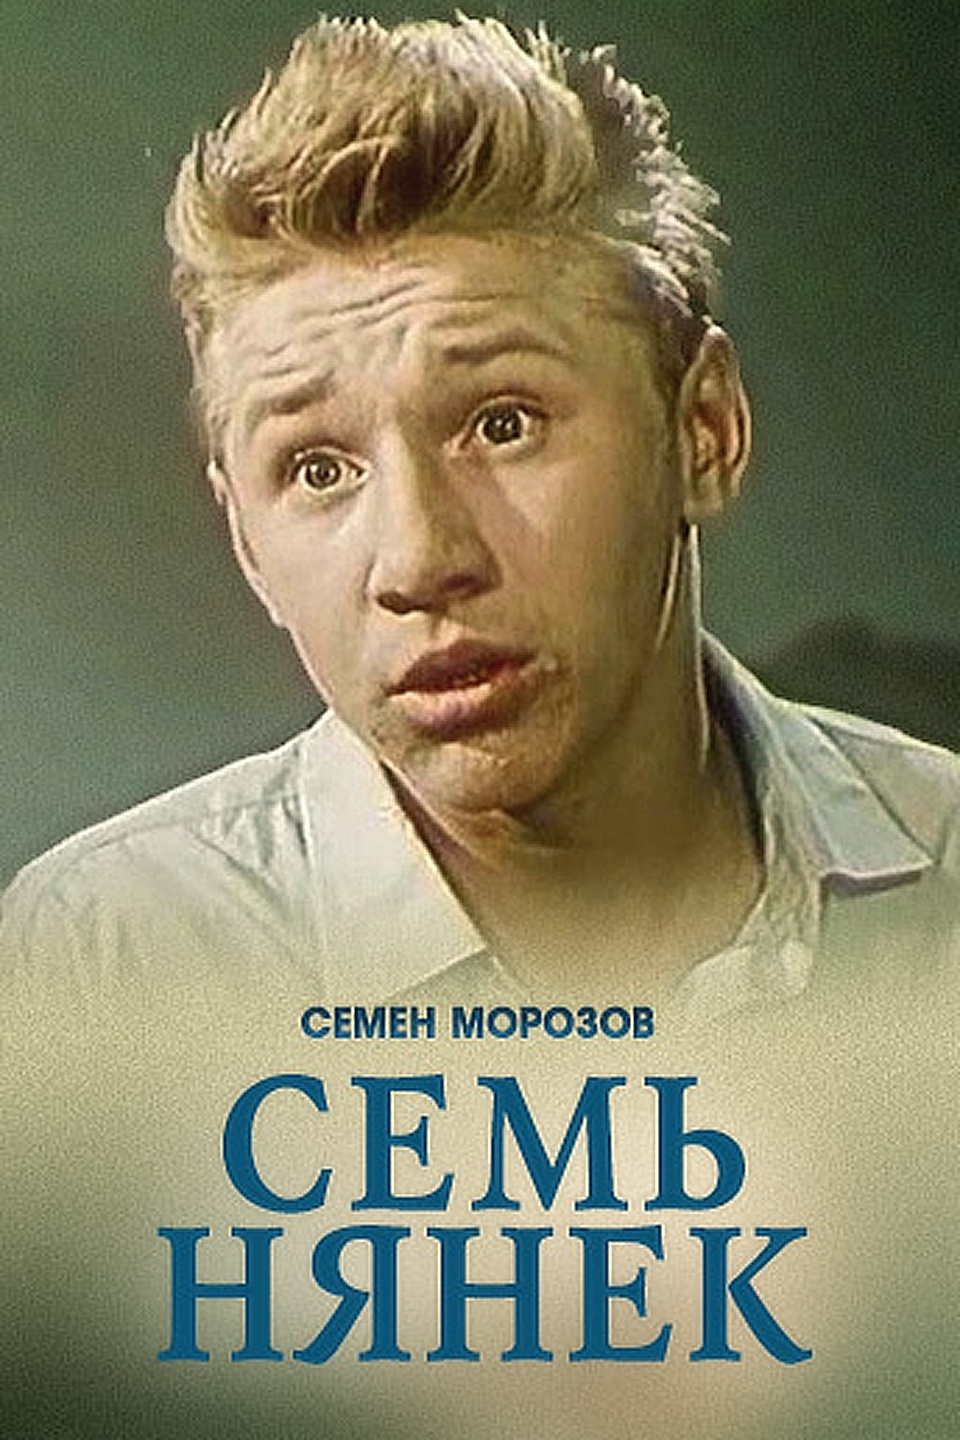 Семь нянек фильм 1962